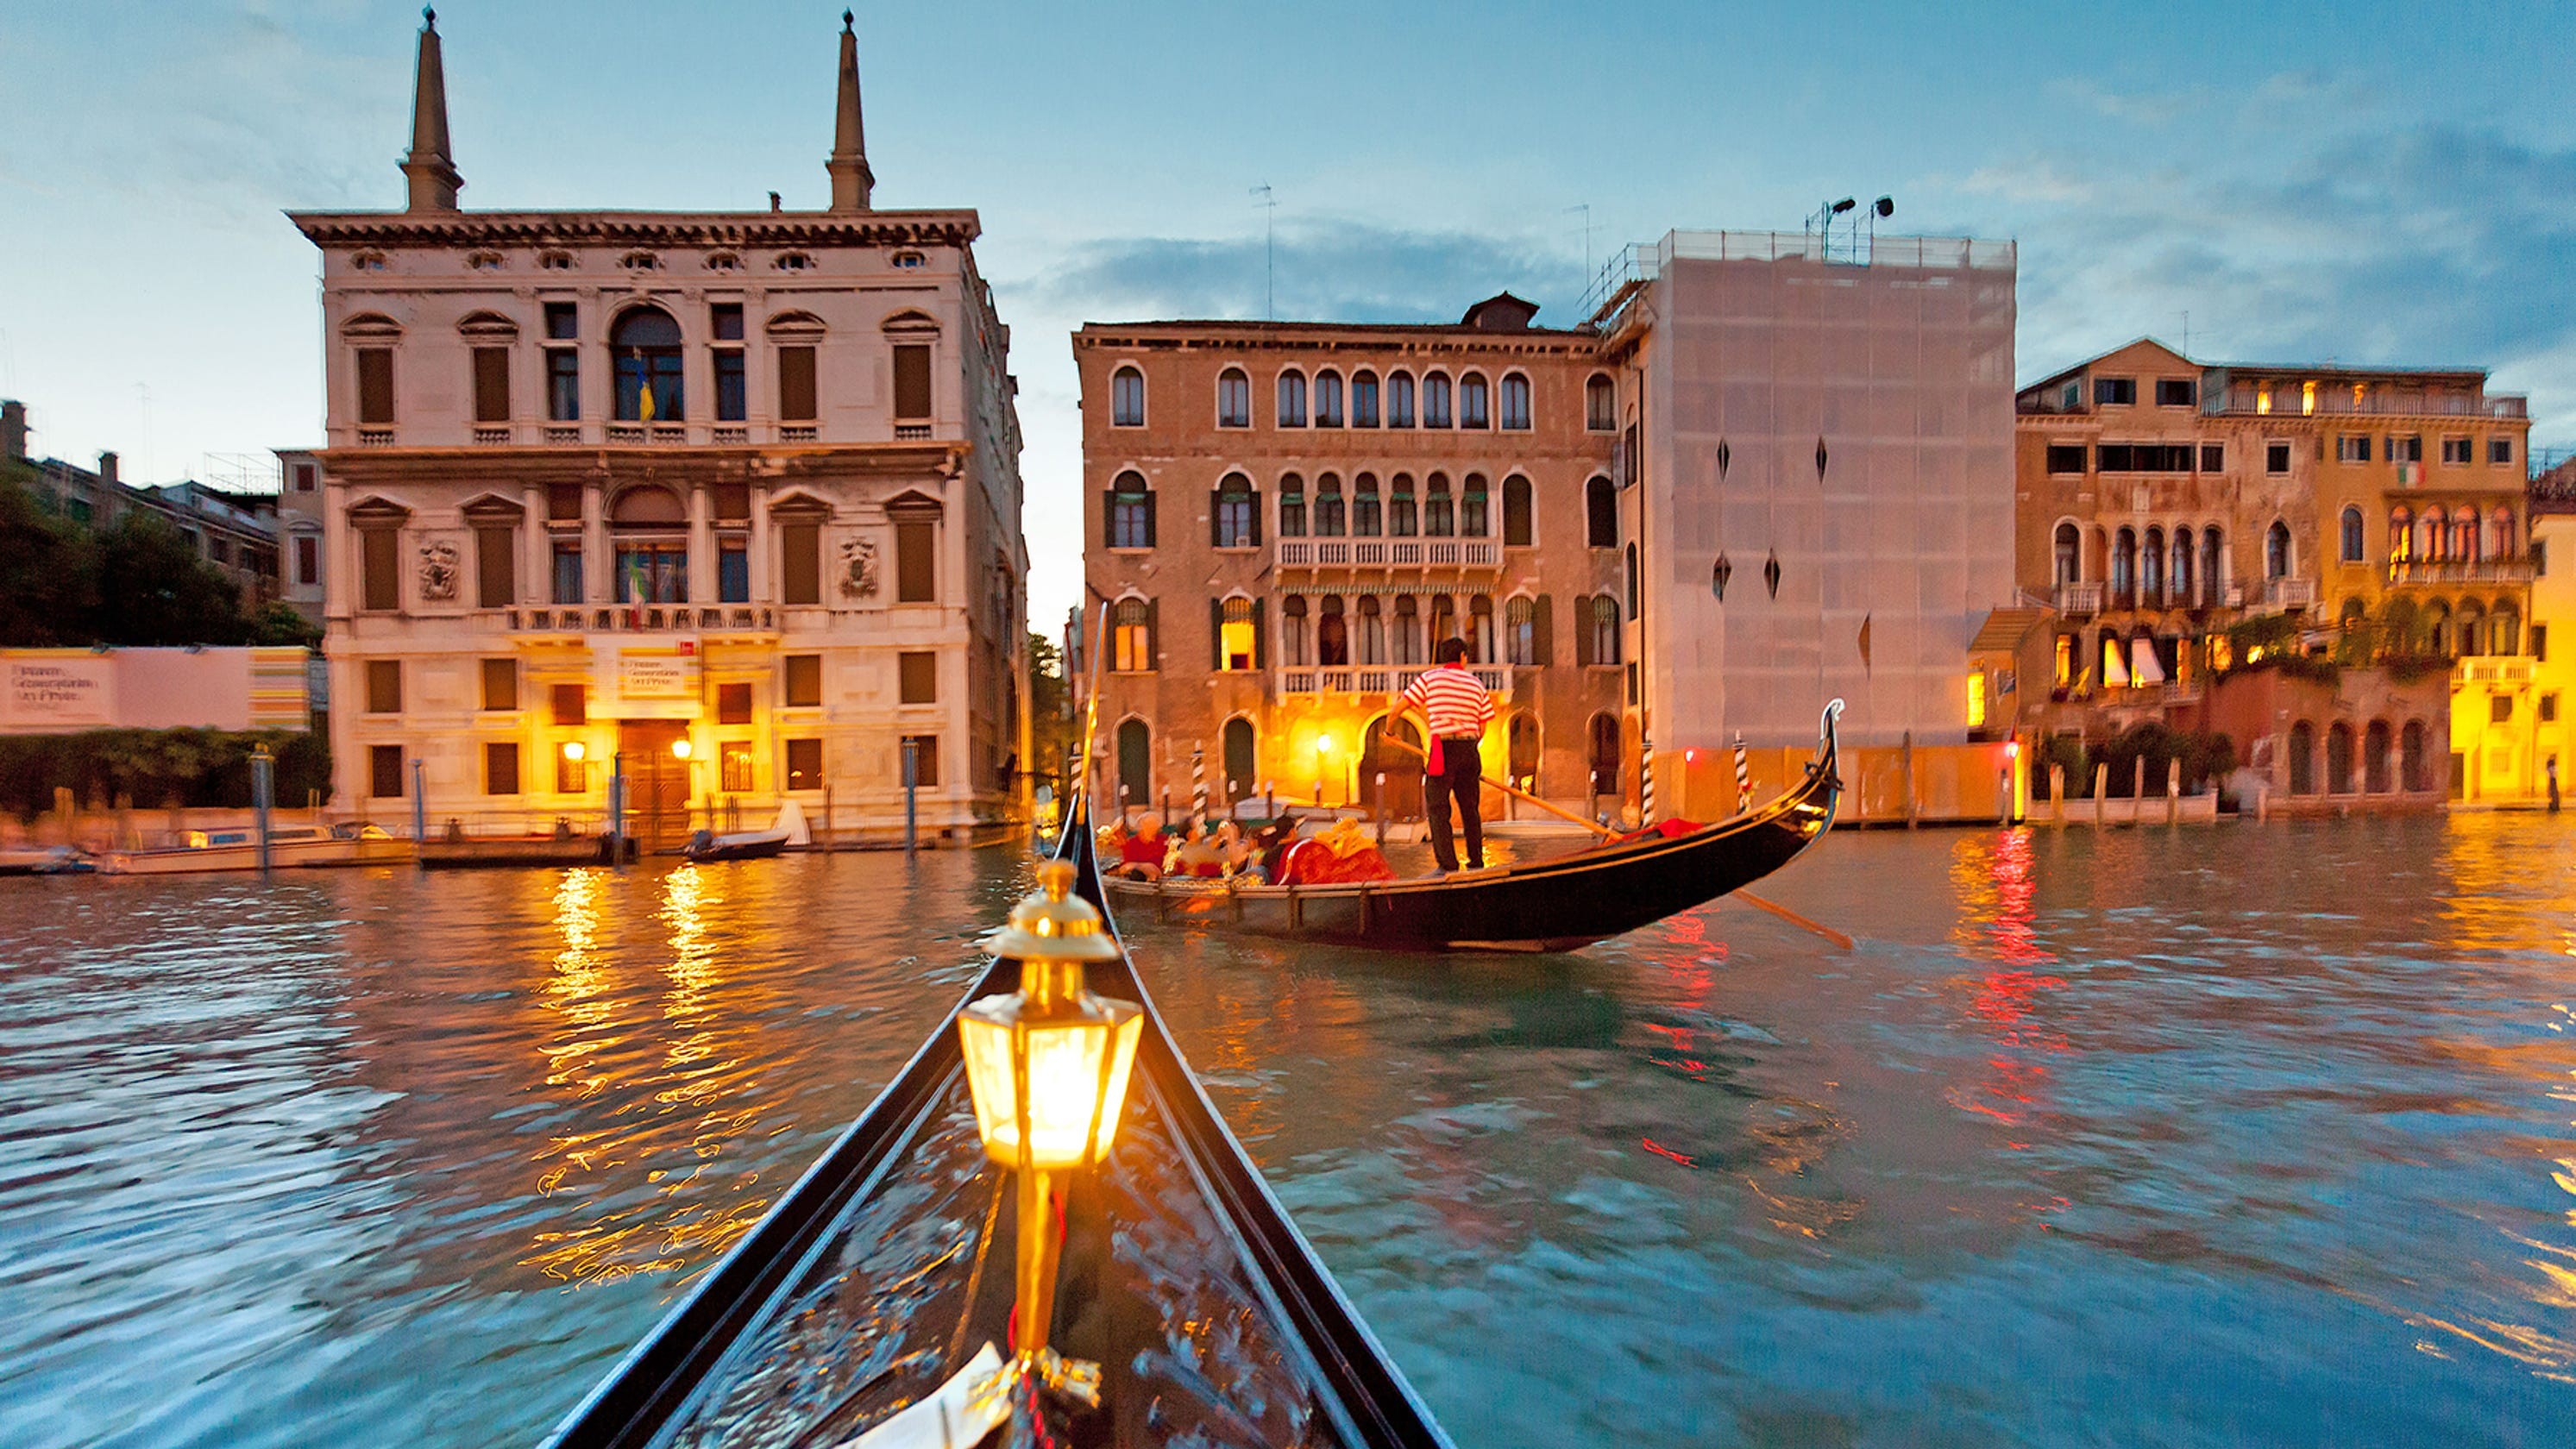 Nét thơ mộng trong từng cảnh sắc của Thành phố Venice